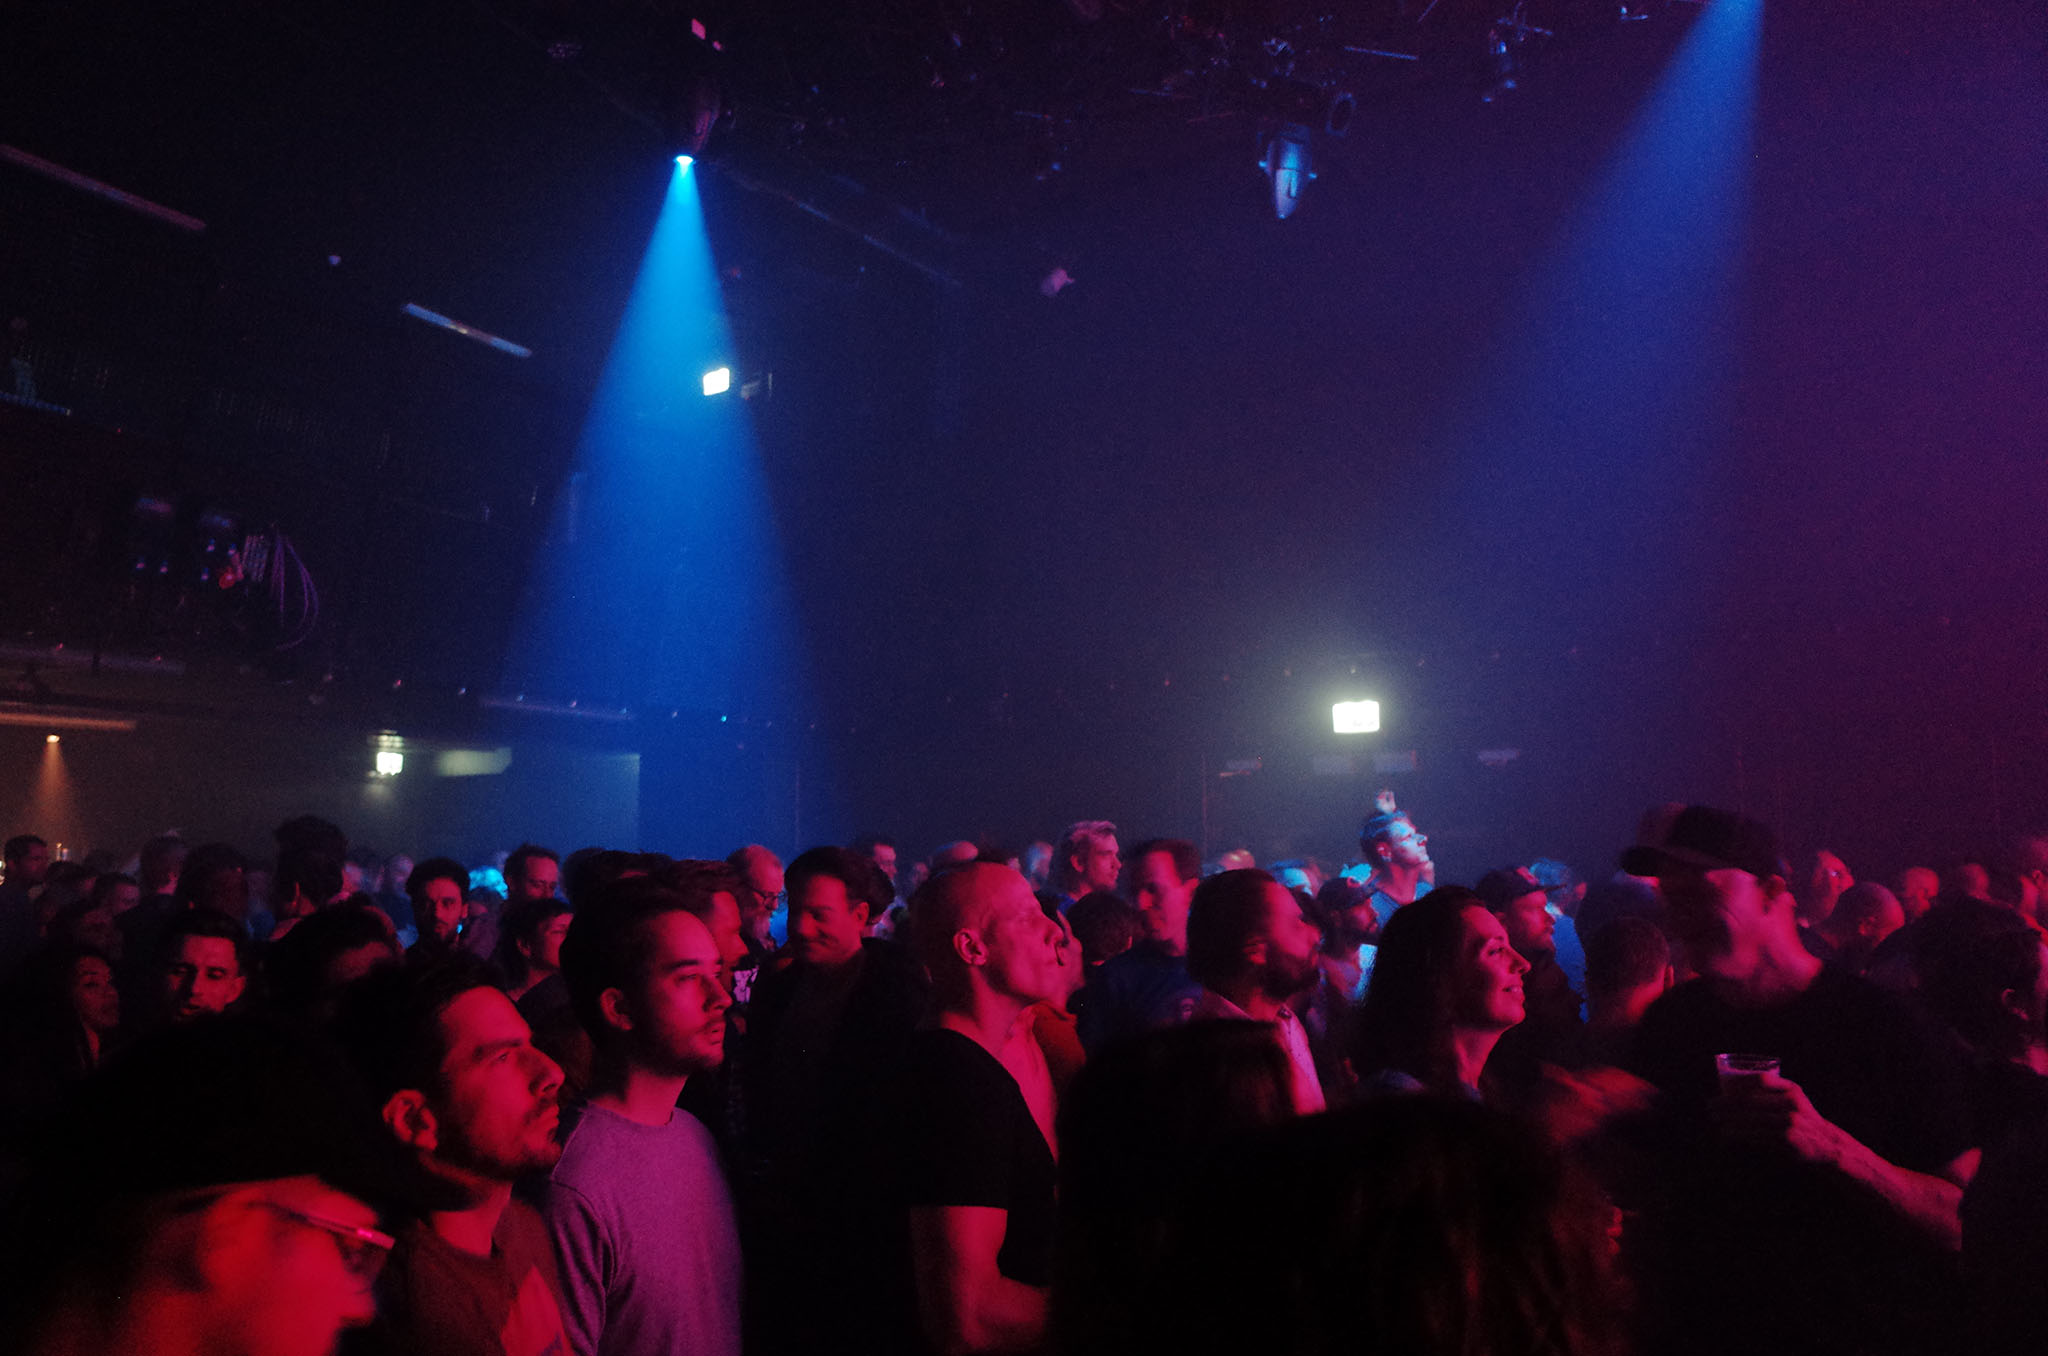 Interior de una discoteca durante un concierto | Foto de Koen meyssen en Unsplash